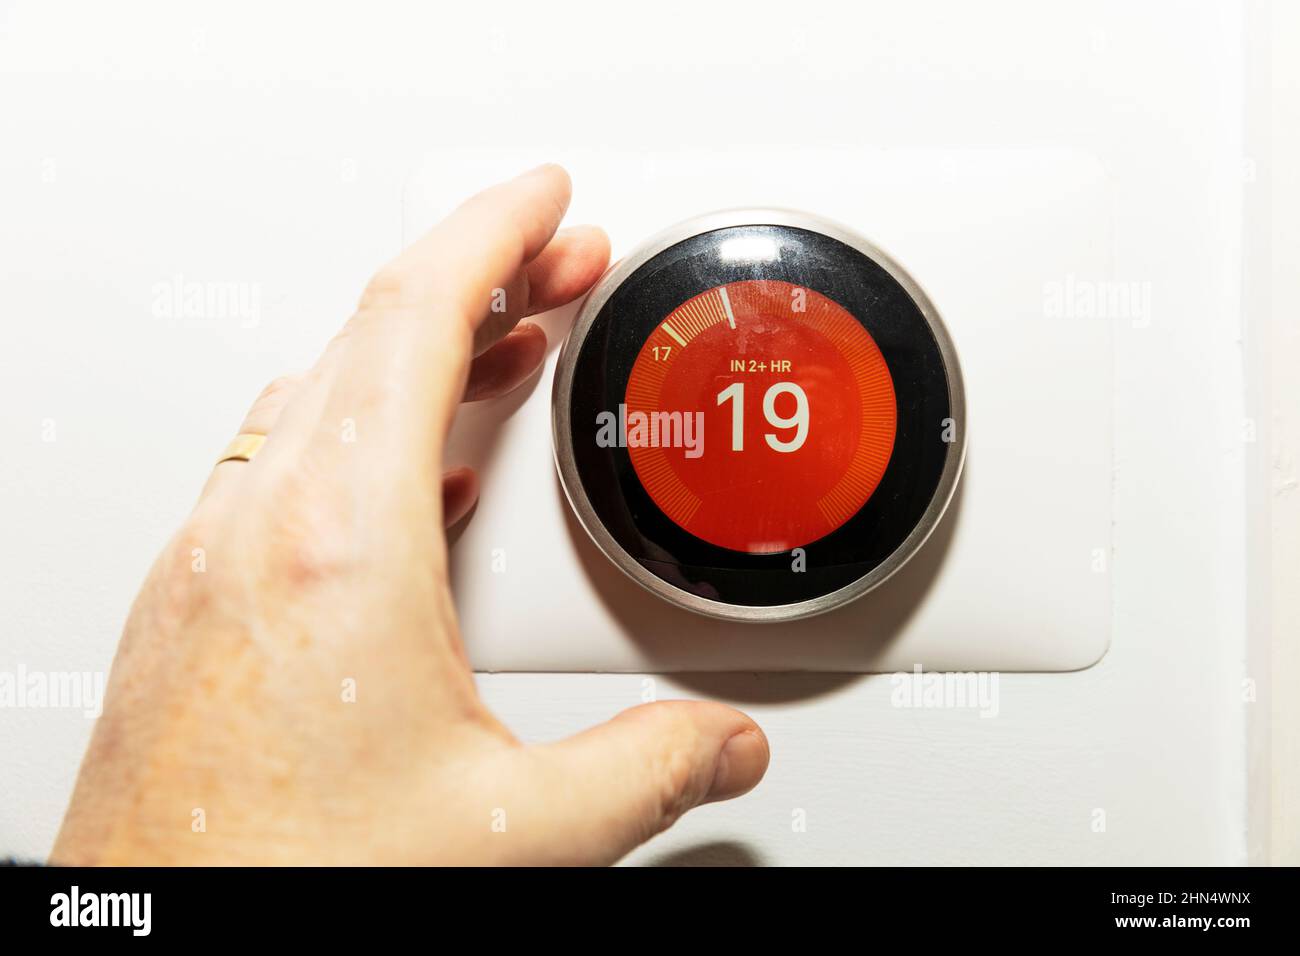 Google Nest, termostato, termostato Nest, termostato de bajada, precios del gas, Facturas de energía, termostato de nido de Google, calefacción, facturas, precios de energía, Foto de stock